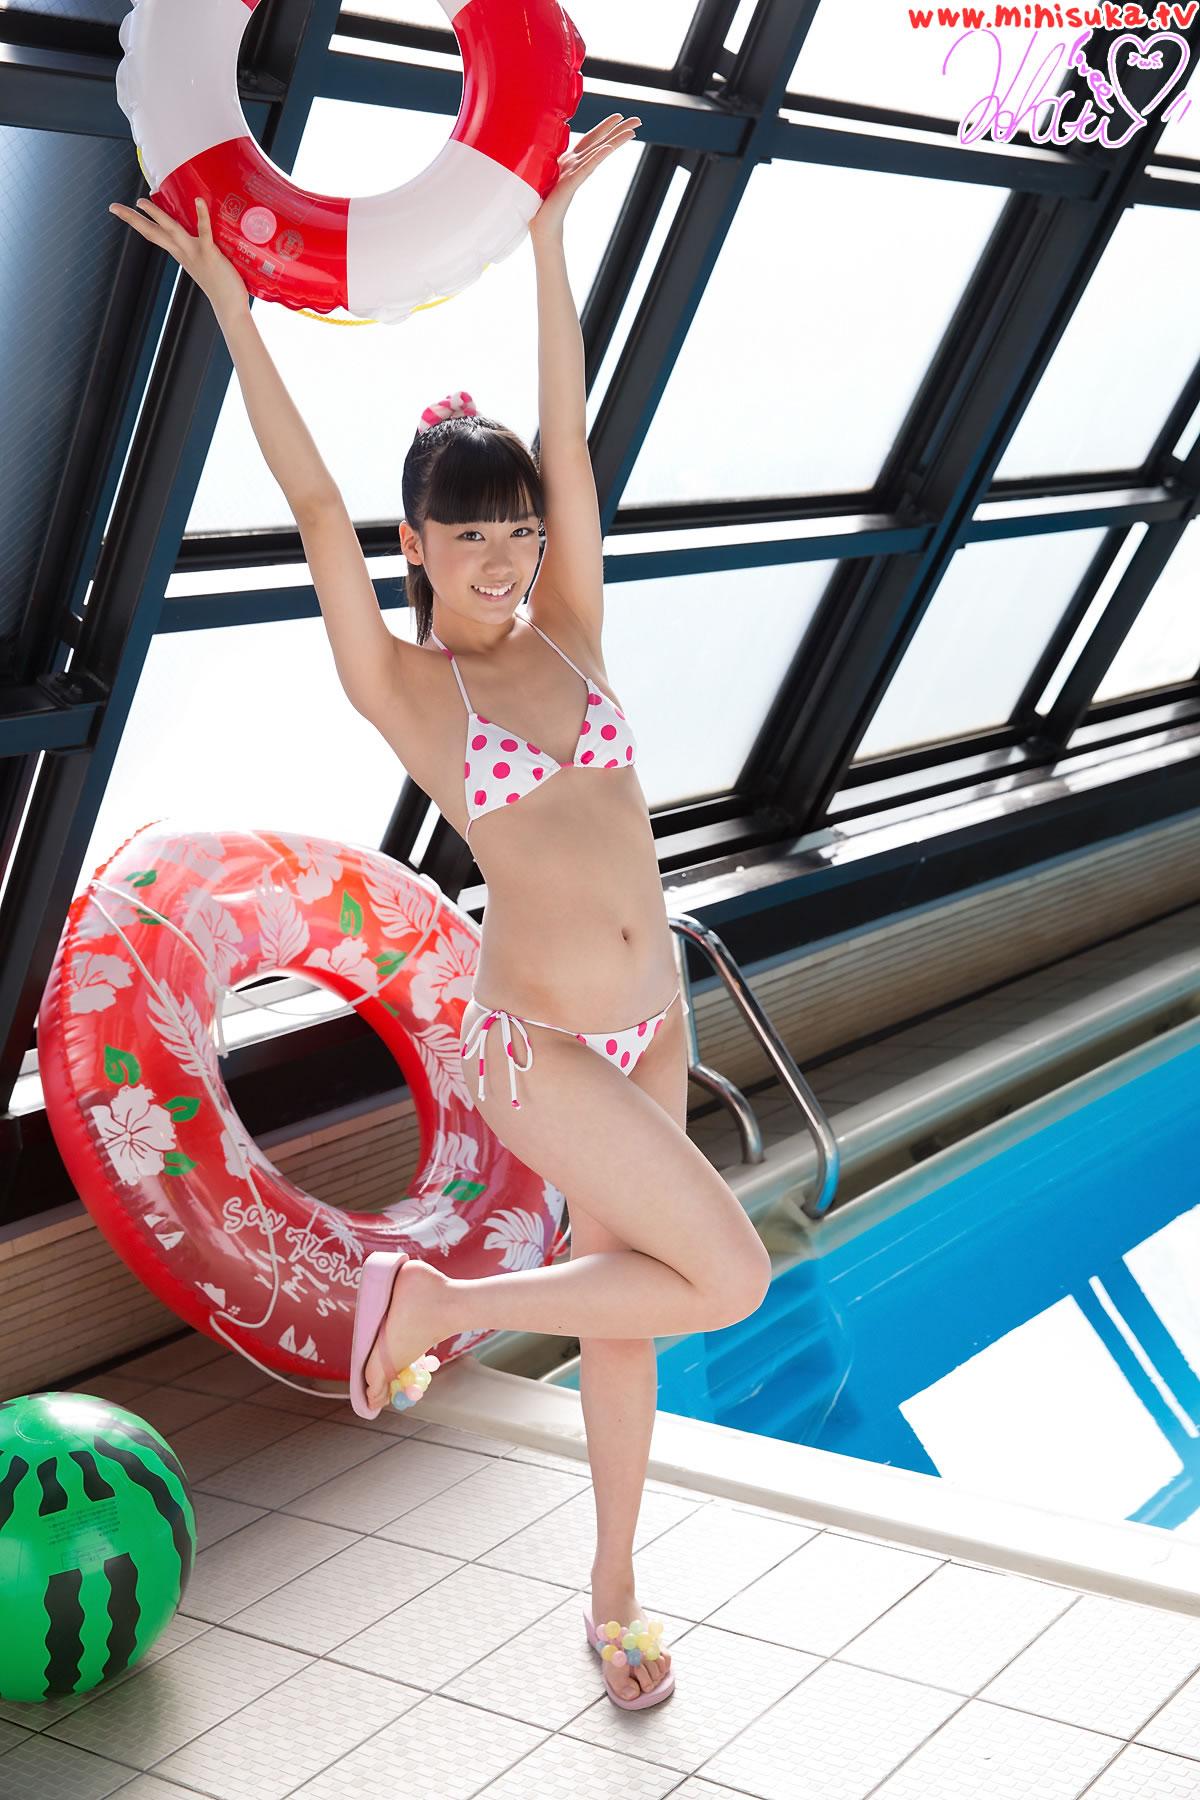 日本性感美女西野小春 Koharu Nishino 白色泳装写真,日本性感美女西野小春 Koharu Nishino 白色泳装写真